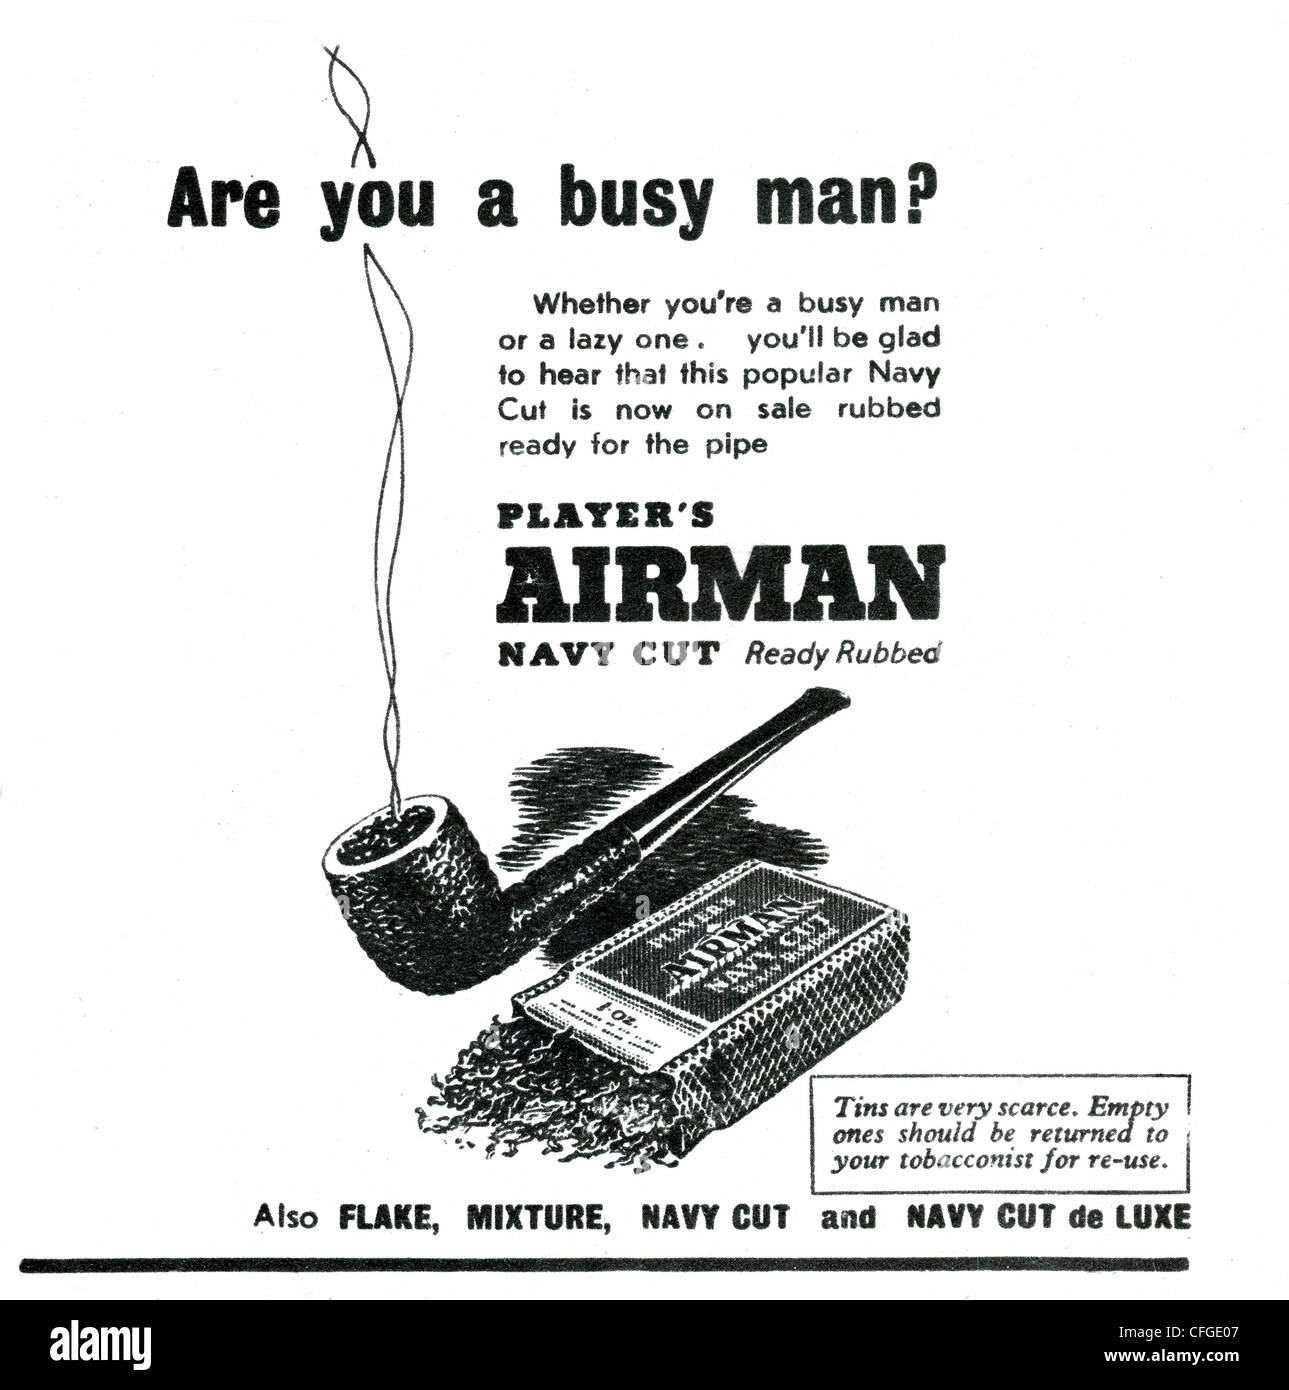 I giocatori Airman Navy Cut pubblicità del tabacco dal 1947 Foto Stock